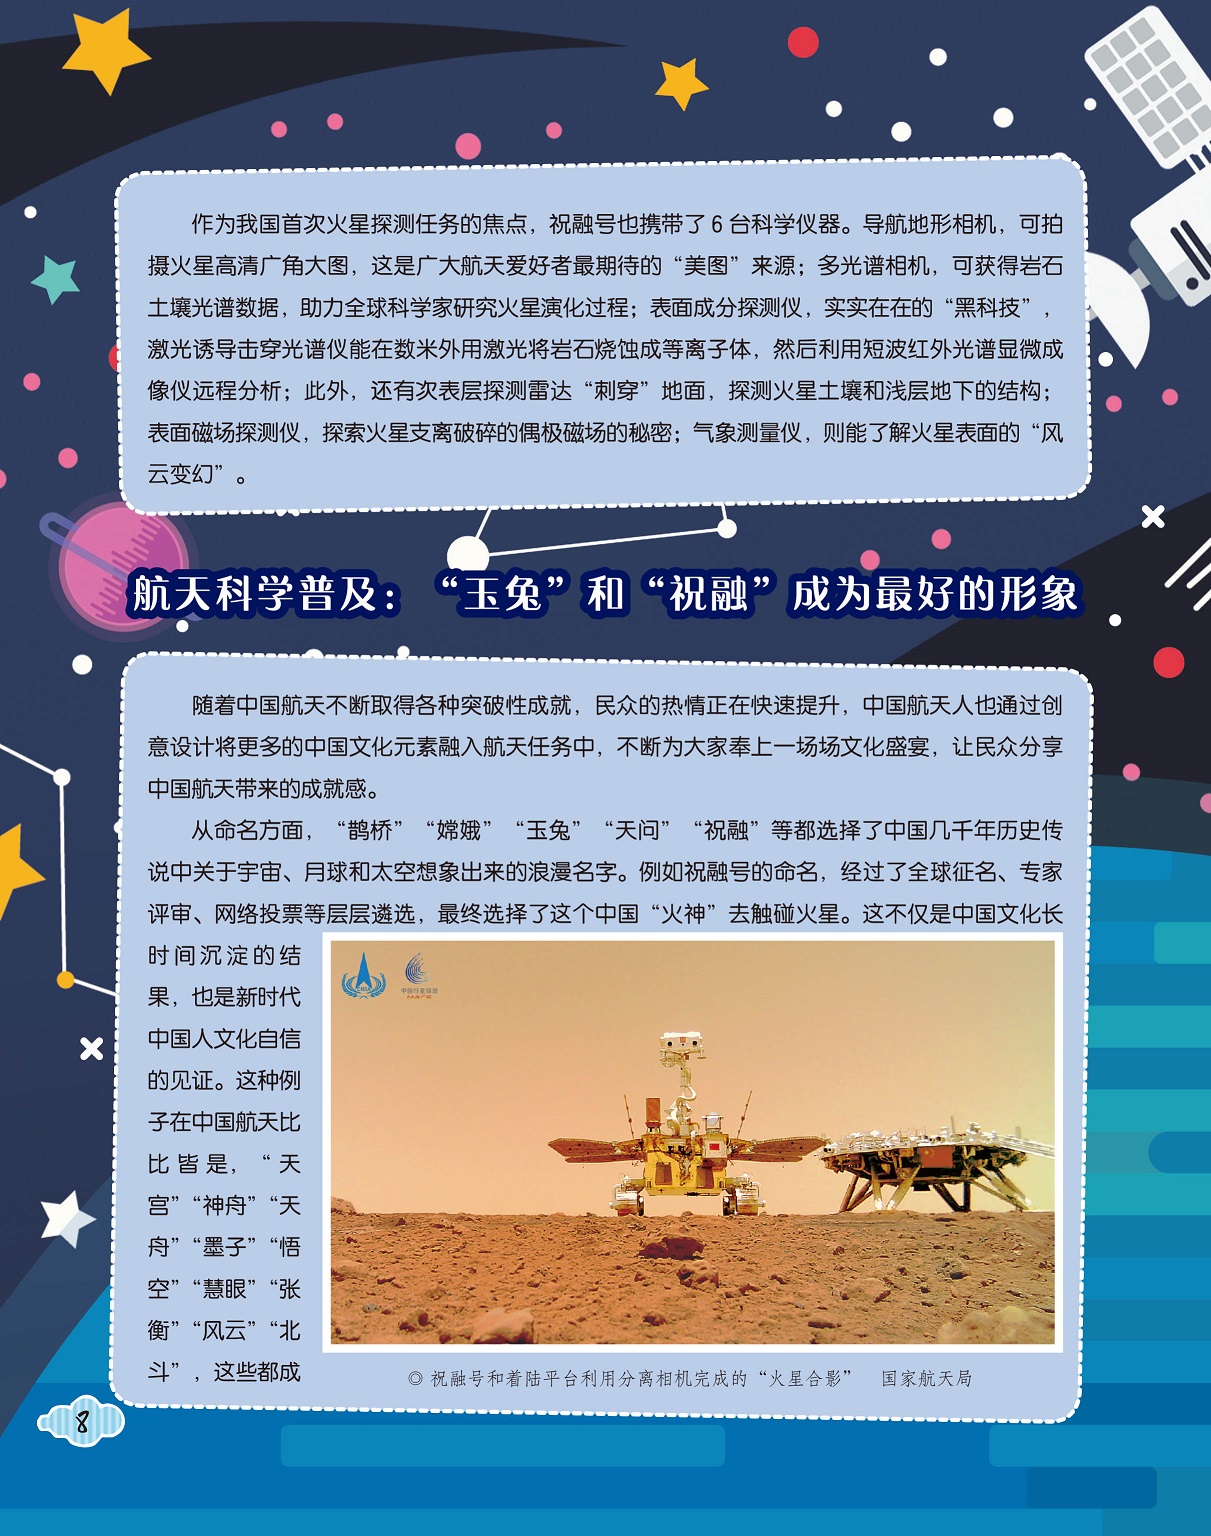 我国首次火星探测任务,中国航天不断取得成就